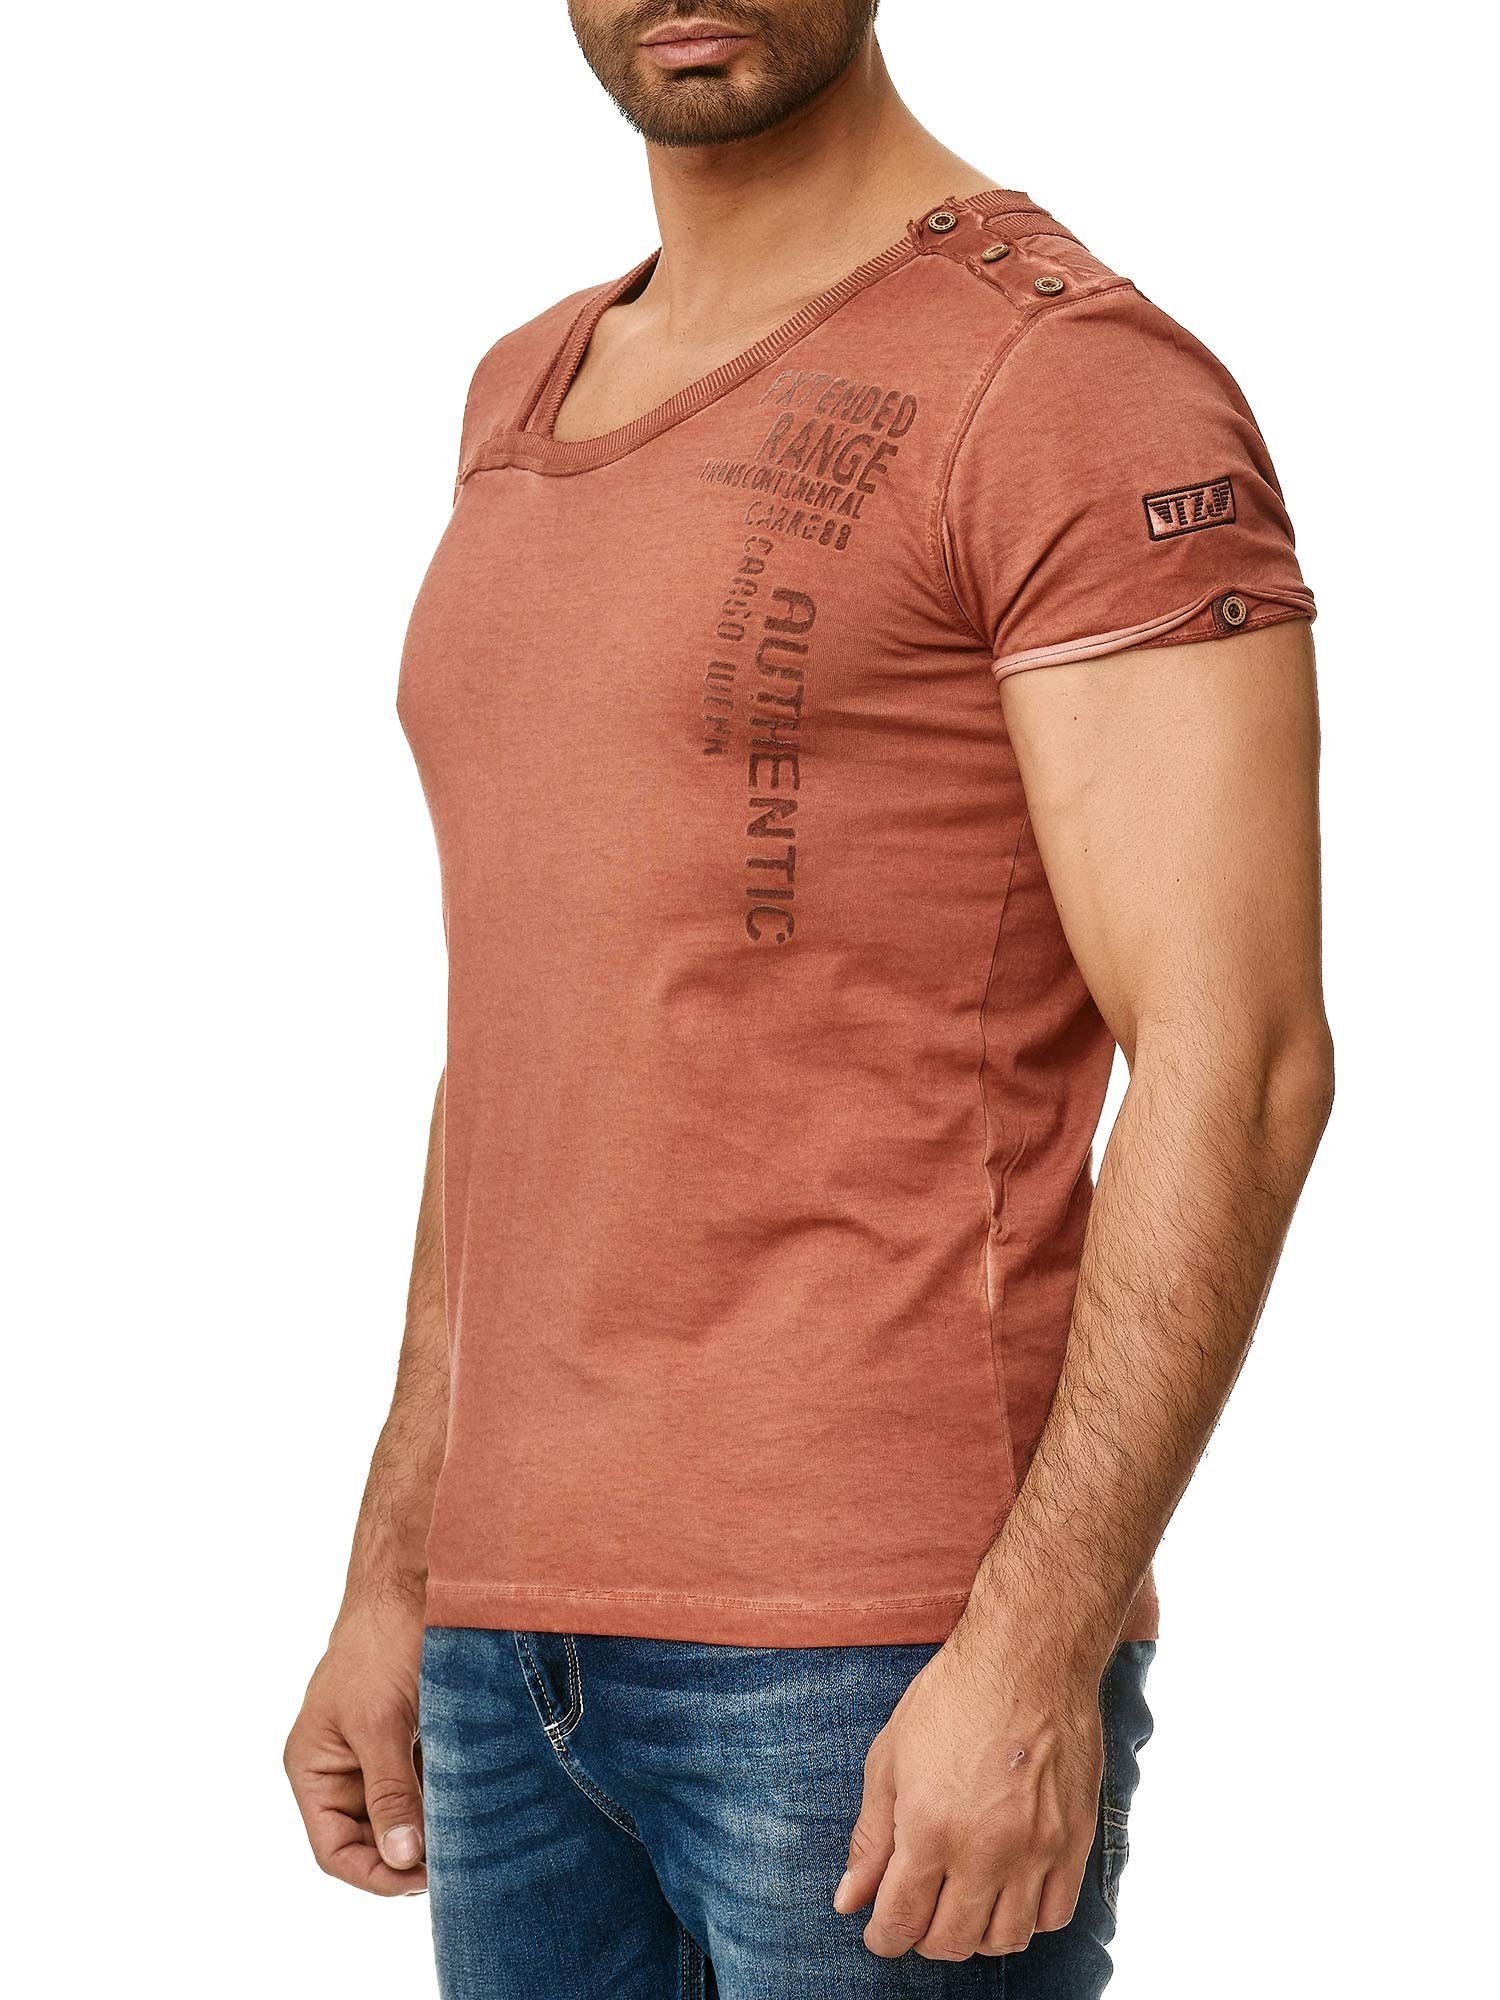 Knopfleiste T-Shirt in trendiger mit bordeaux Schulter Kragen der an 4022 Ölwaschung Tazzio stylischem und